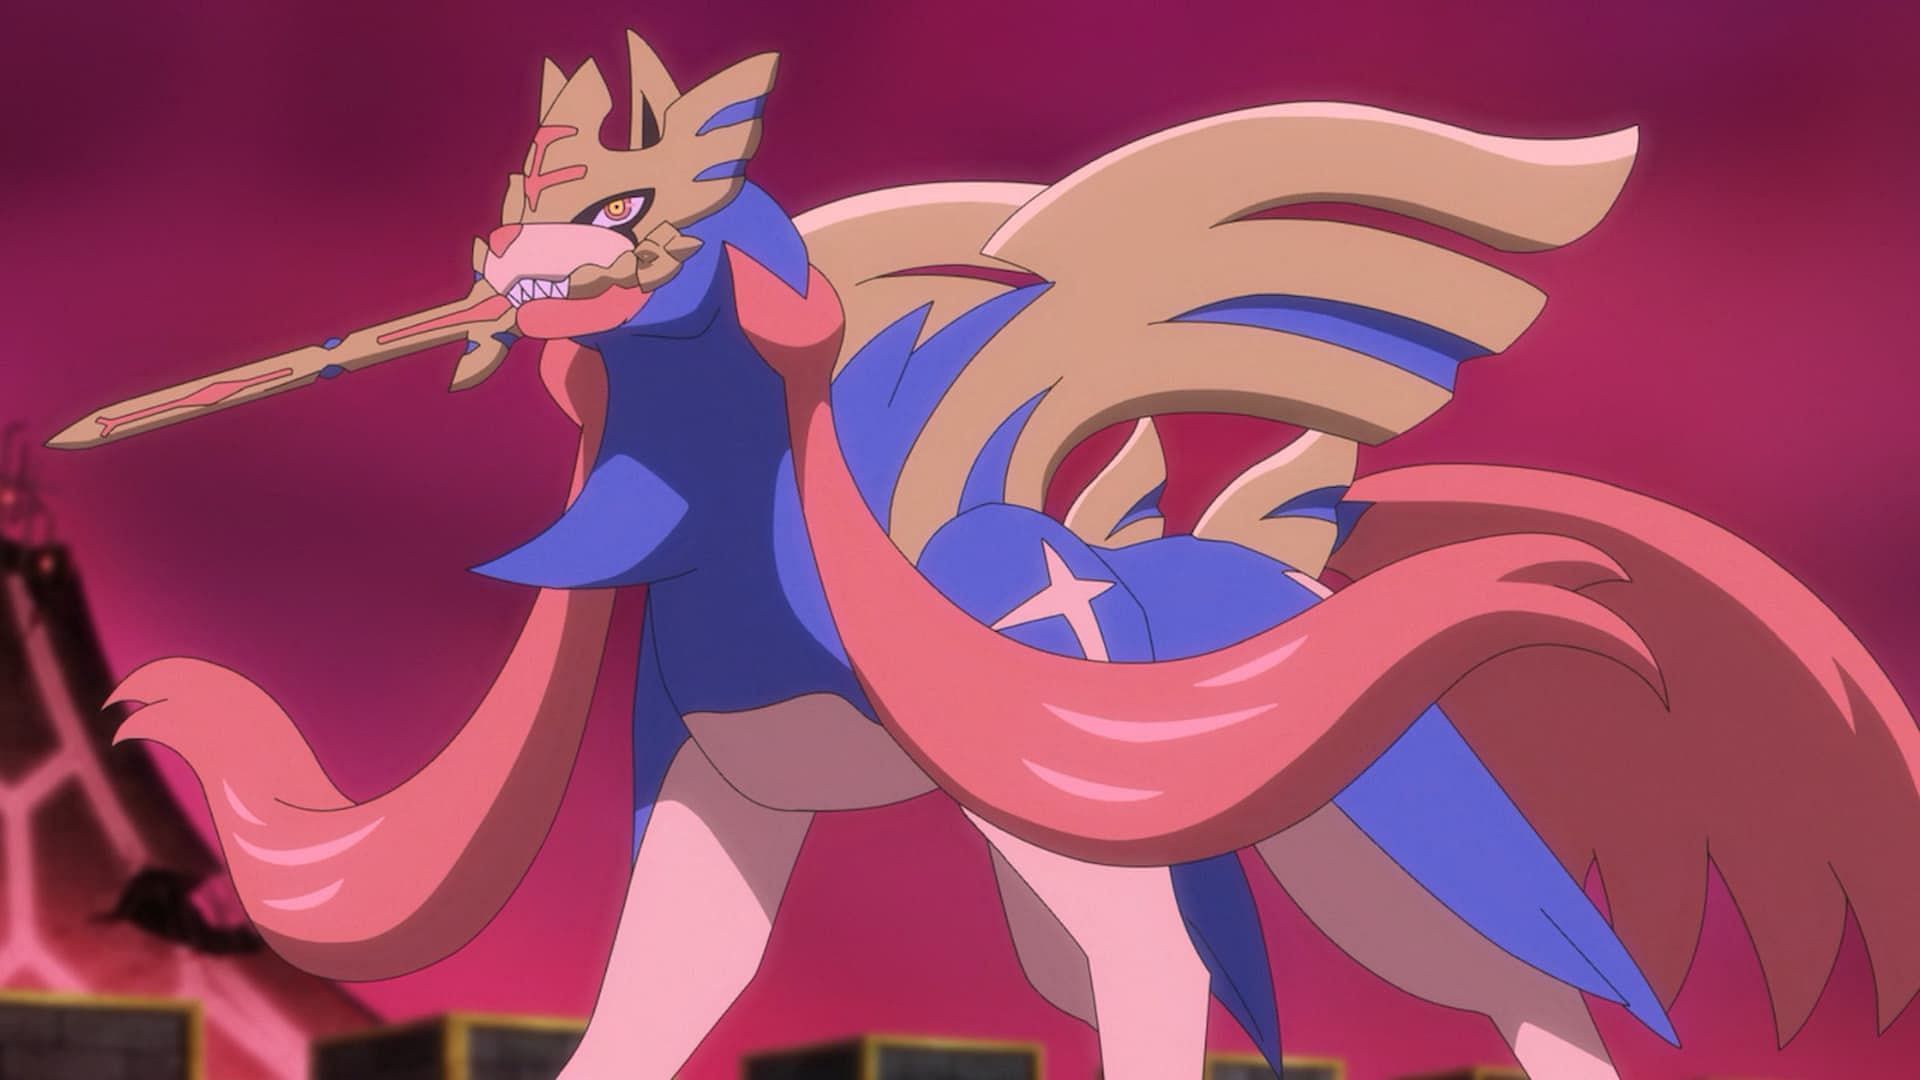 Zacian – Spada coronata nell'anime (immagine tramite The Pokemon Company)